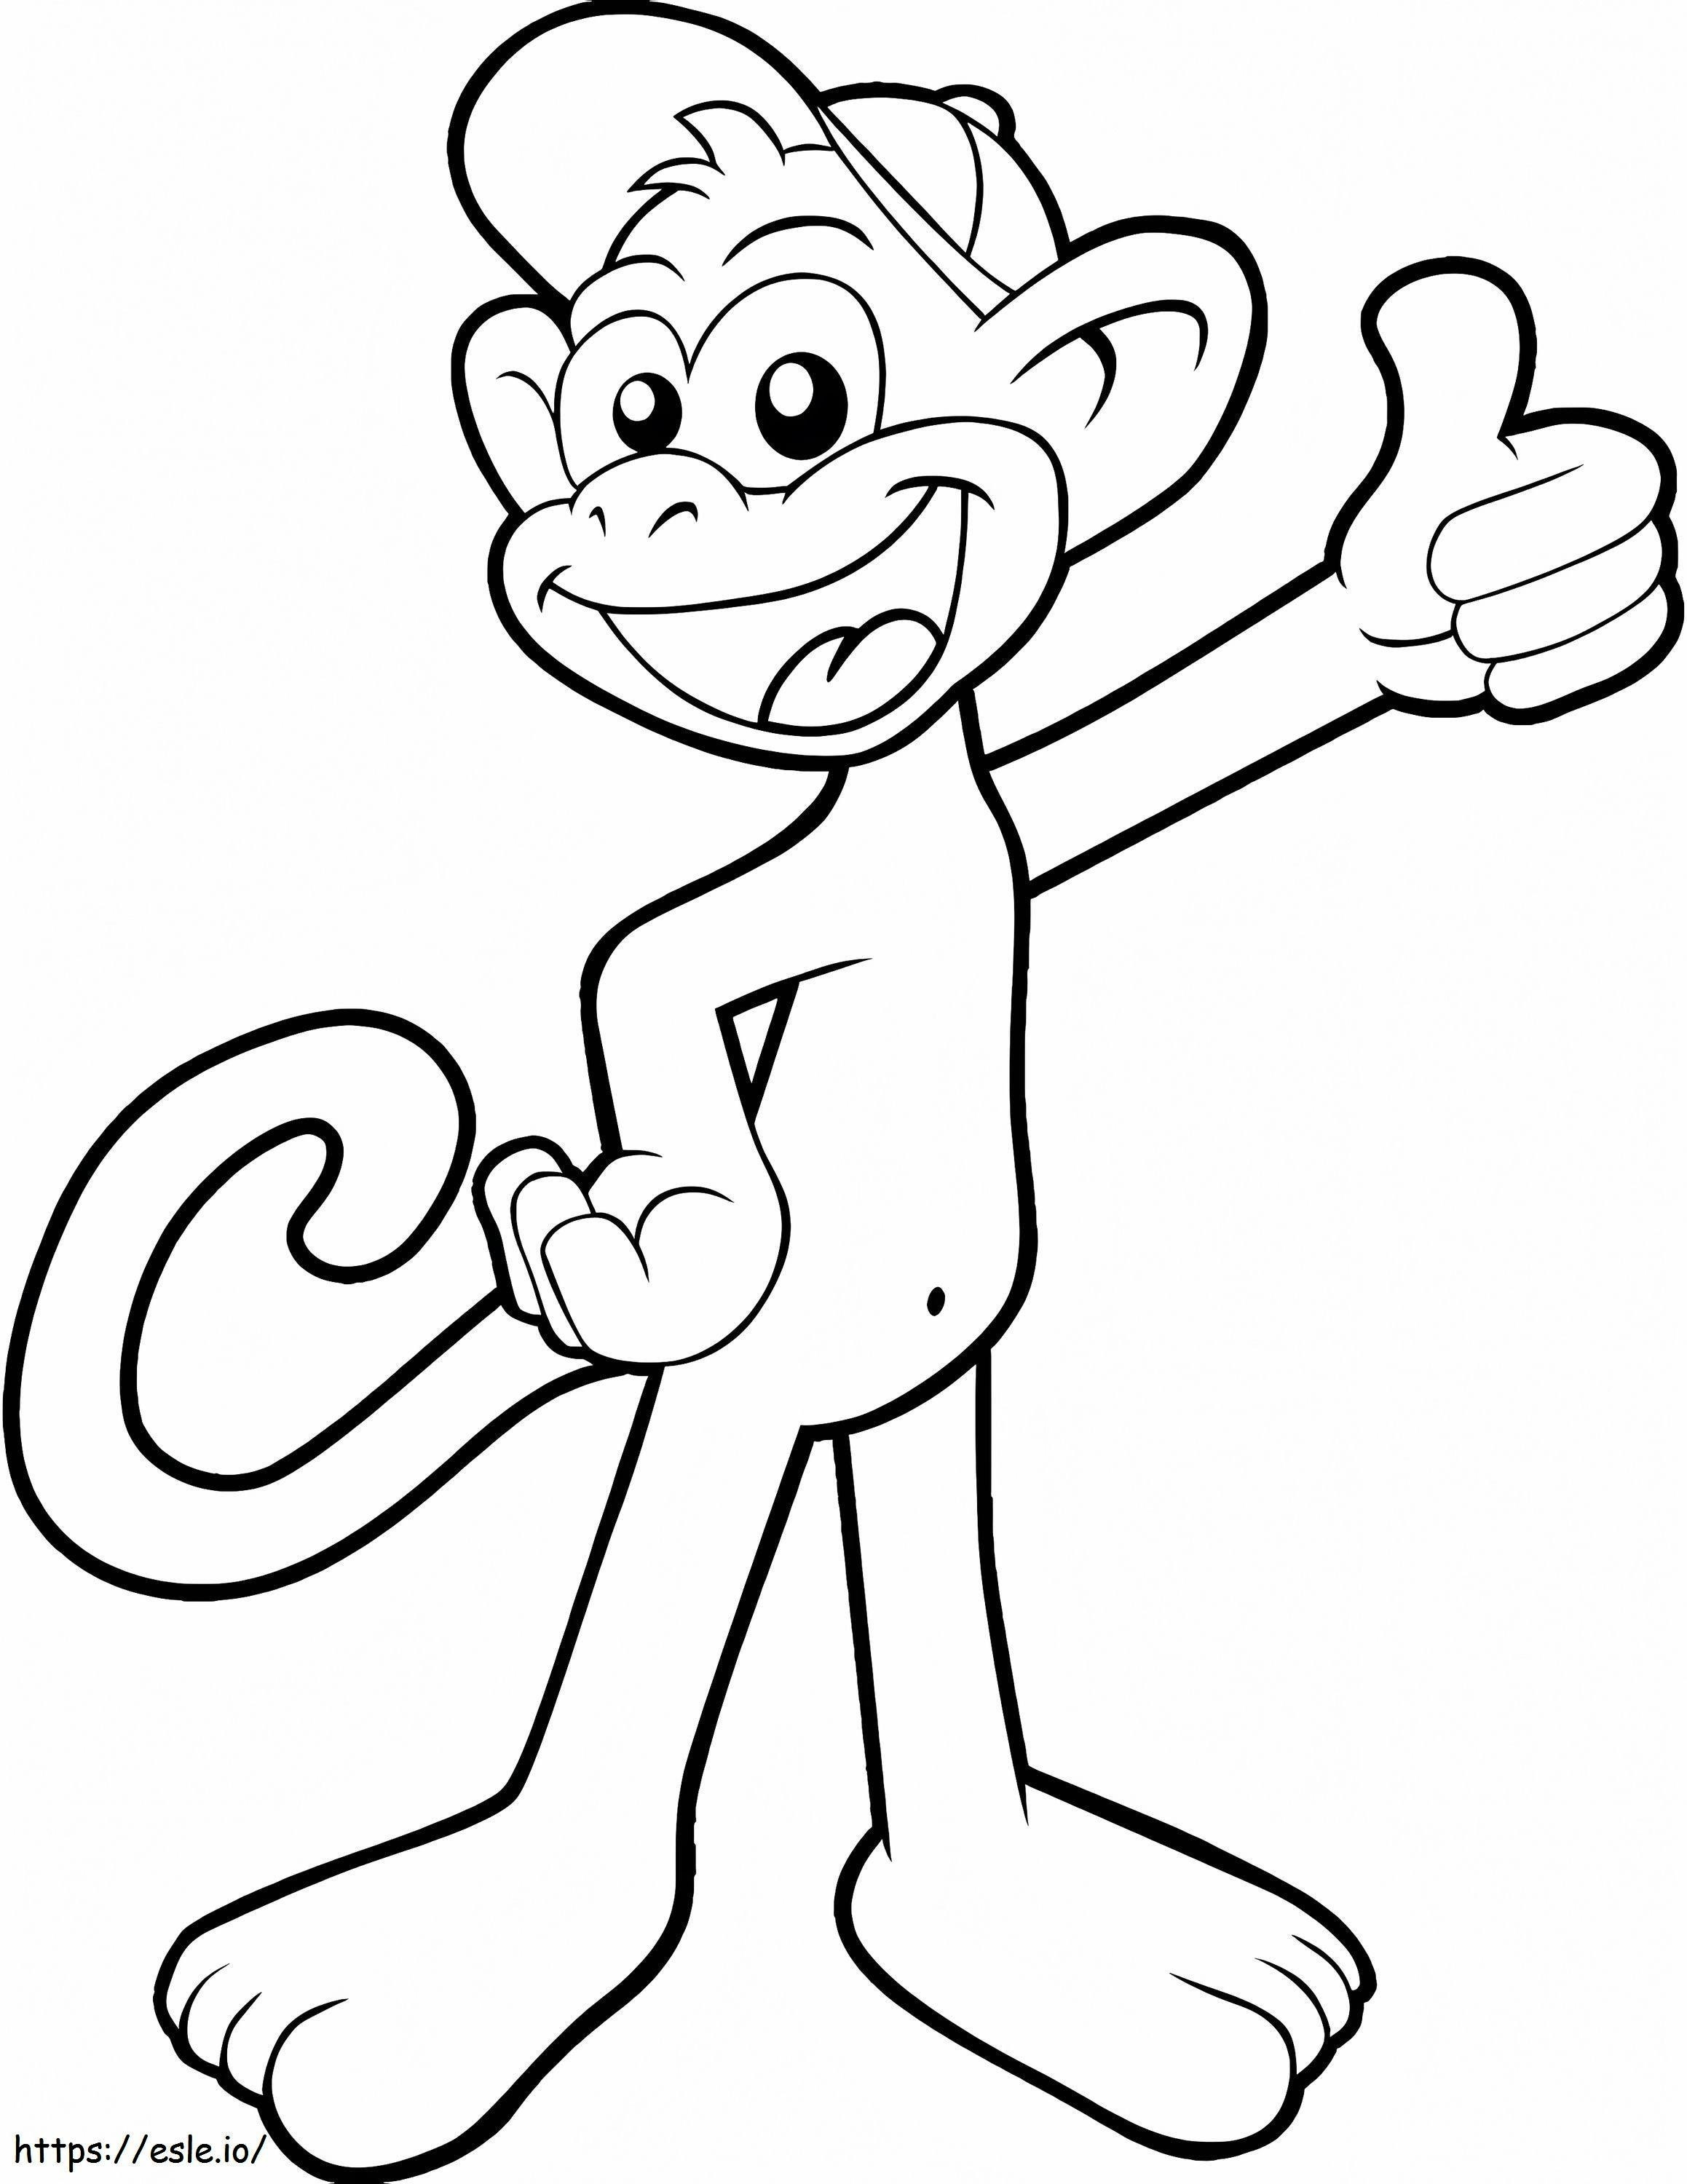 Happy Cartoon Monkey coloring page